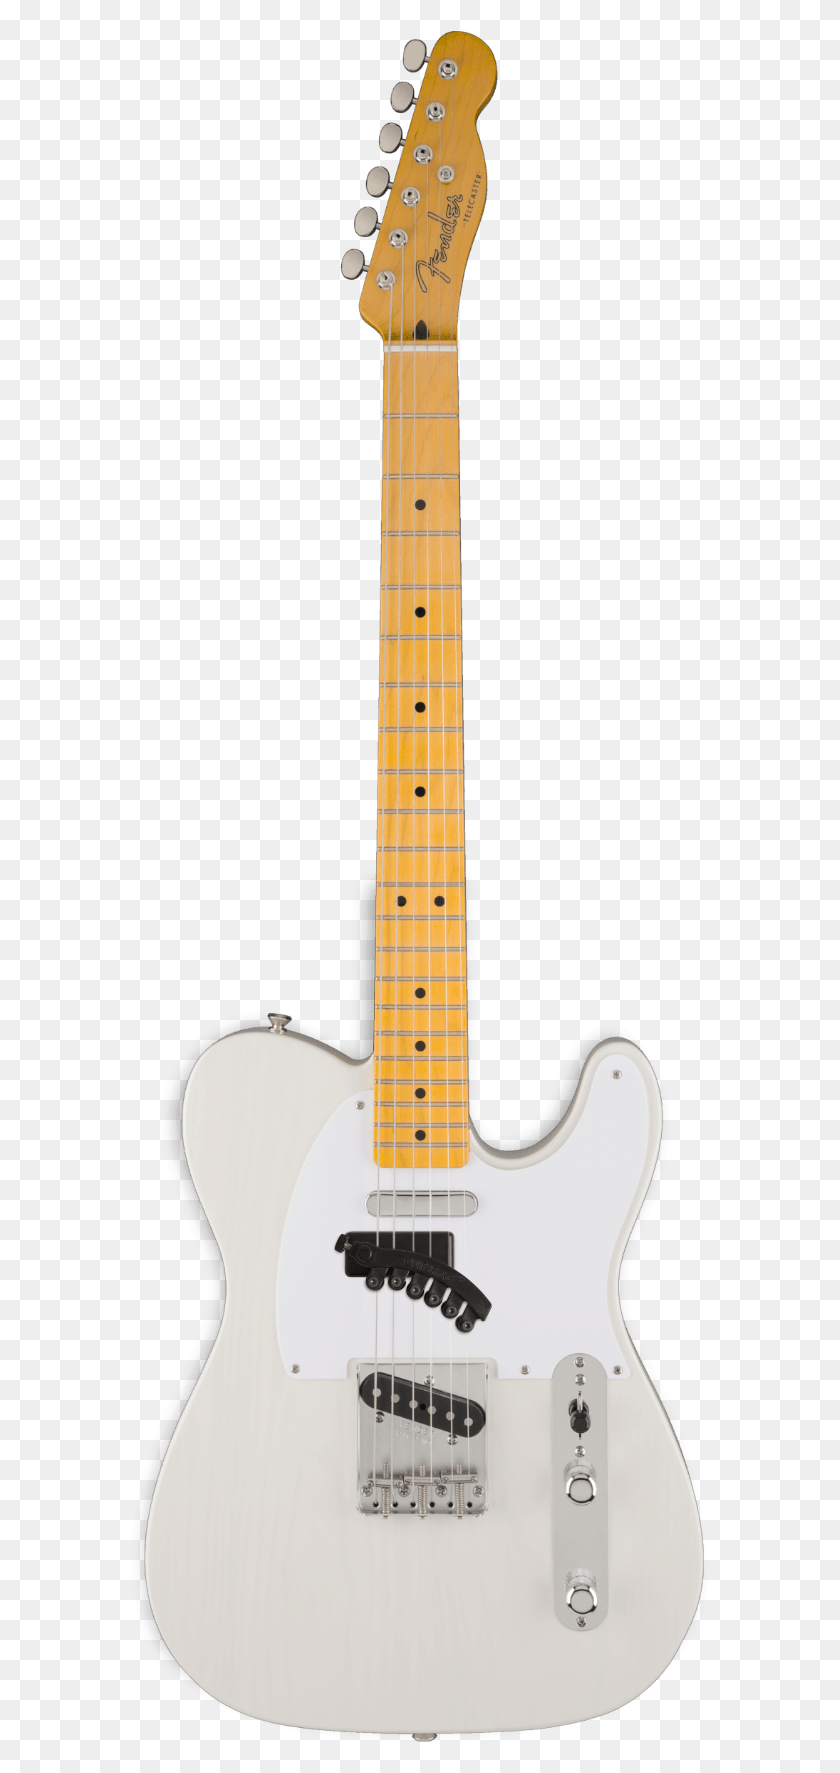 581x1713 Гитара Jo - Первый И Единственный Аксессуар Для Электрогитары Fender Telecaster White, Досуг, Музыкальный Инструмент, Бас-Гитара Png Скачать